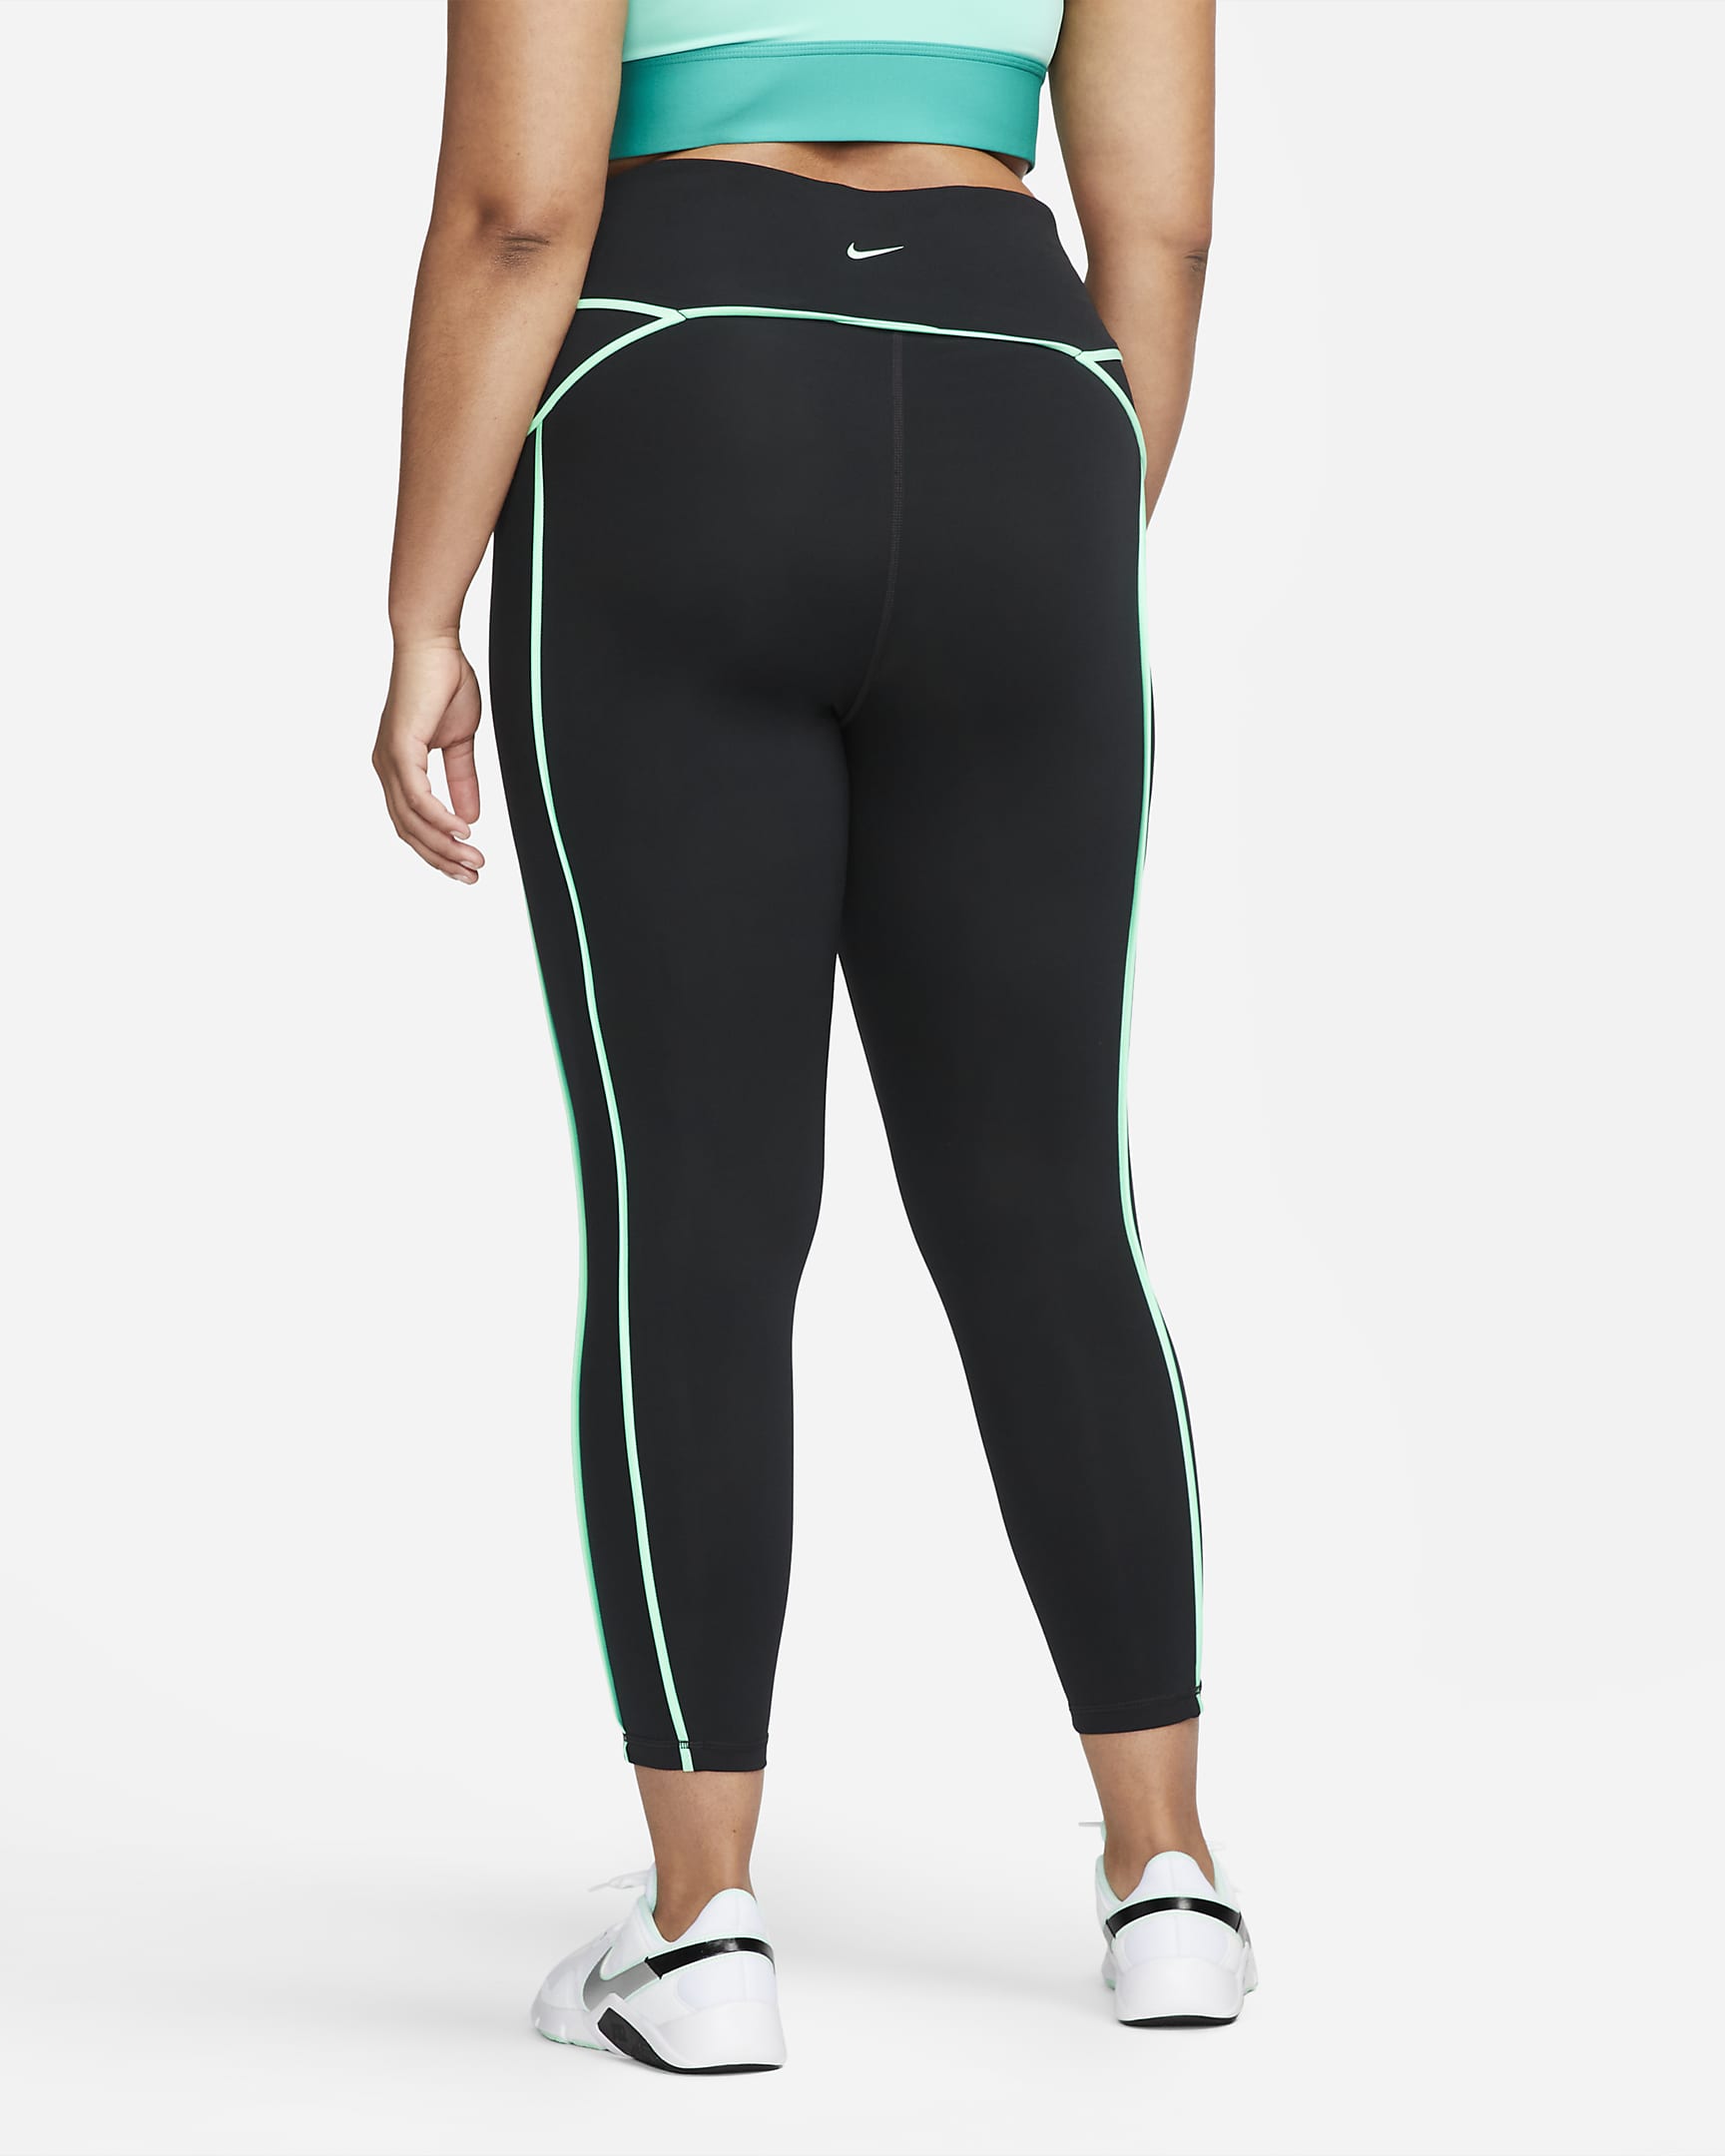 Nike Pro Women's Mid-Rise 7/8 Training Leggings (Plus Size). Nike.com